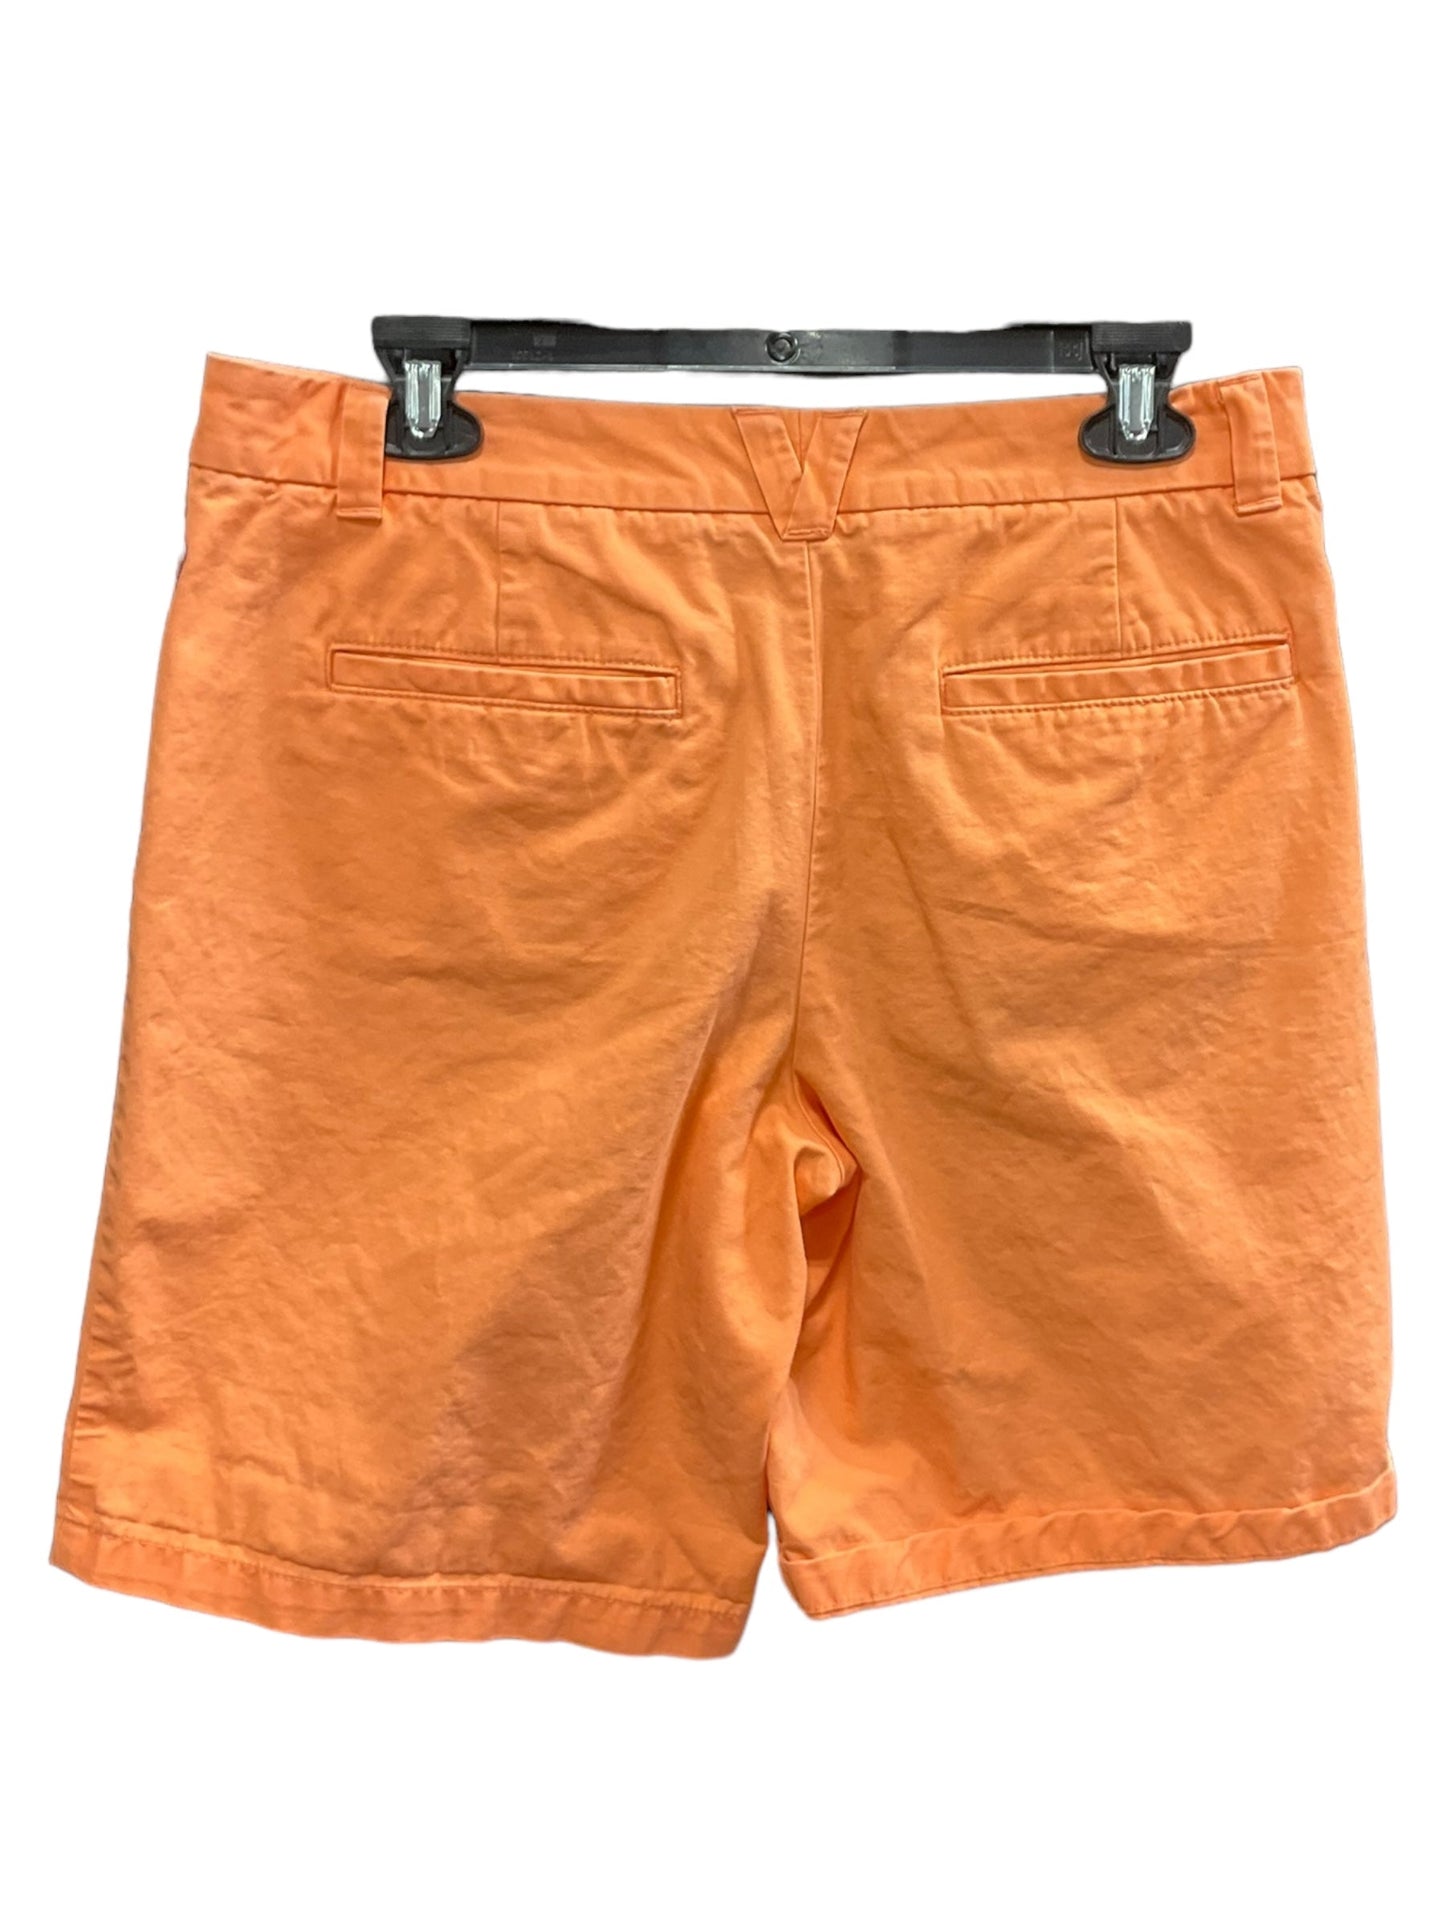 Orange Shorts Gap, Size 6